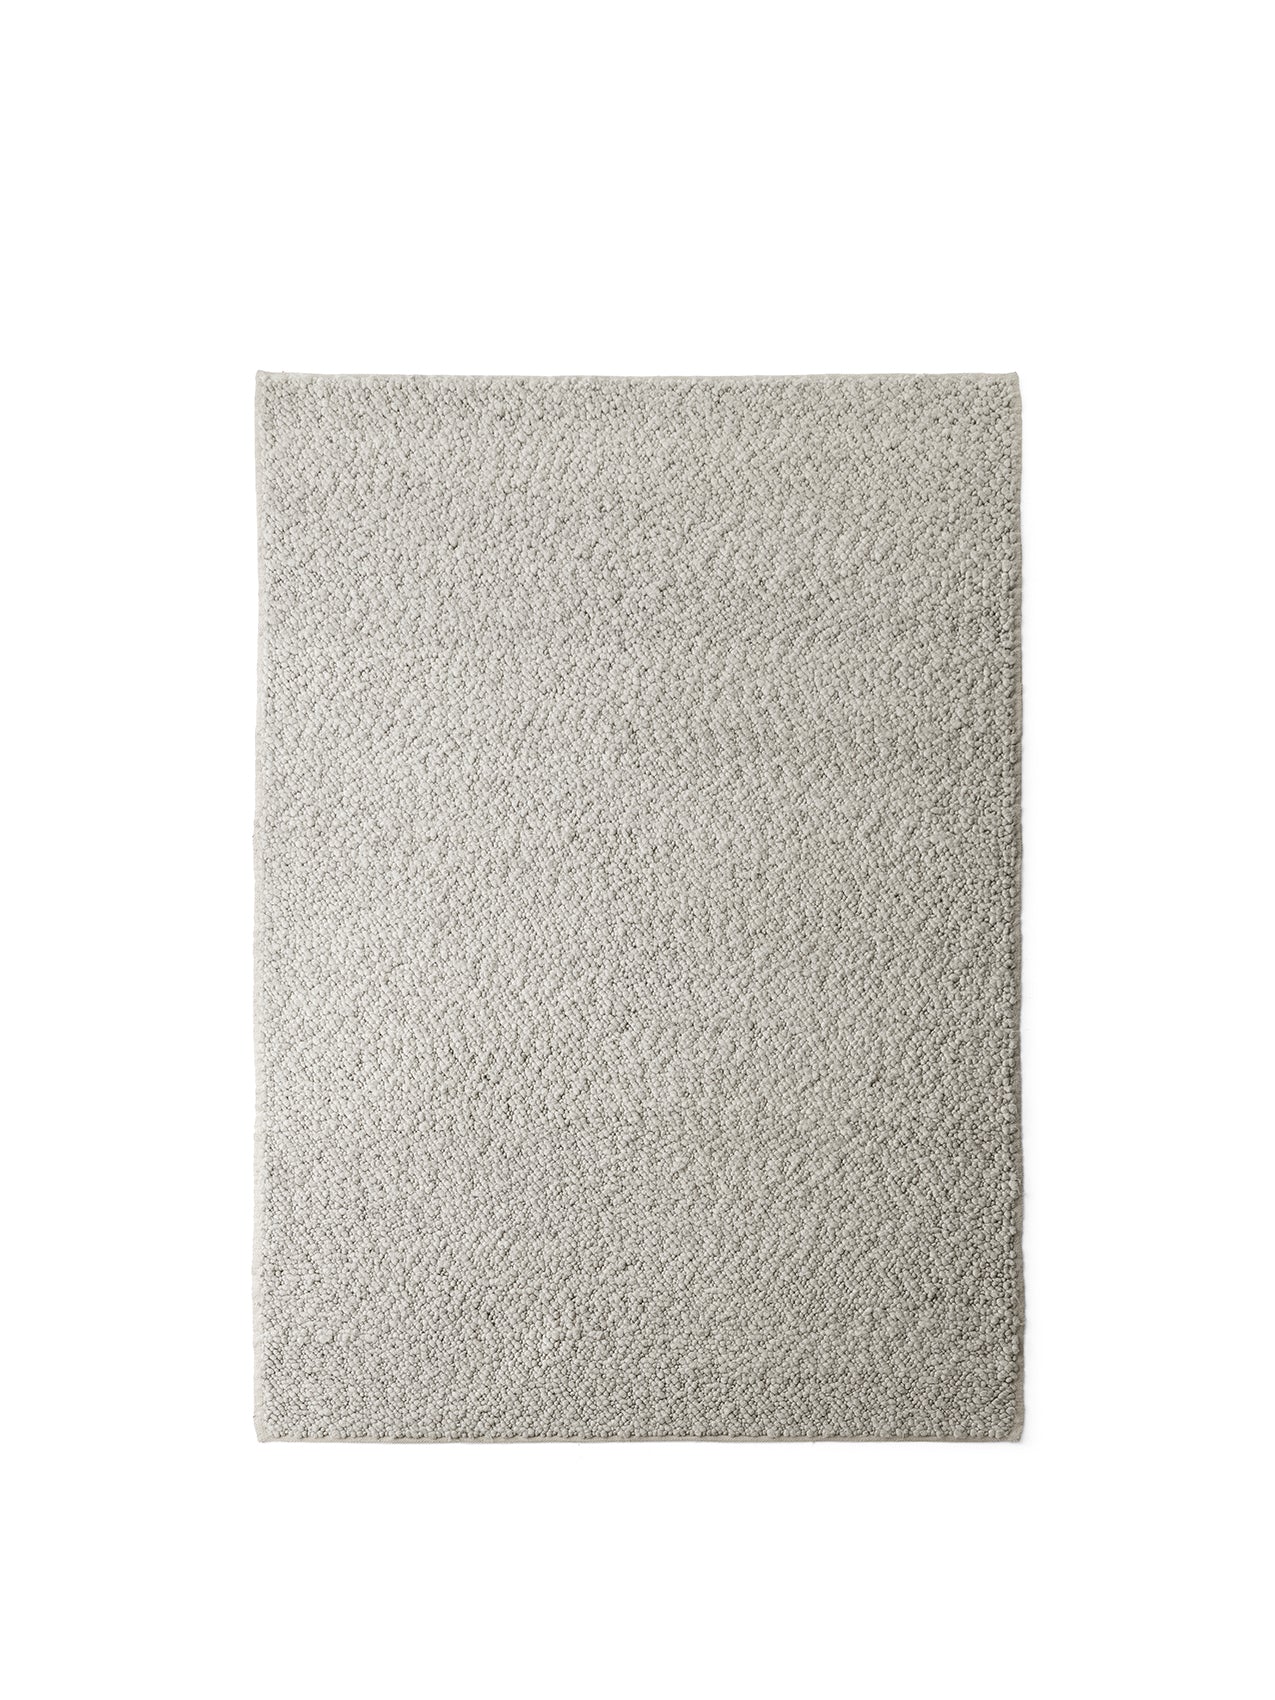 Menu - Gravel tapijt, 170x240 cm,grijs